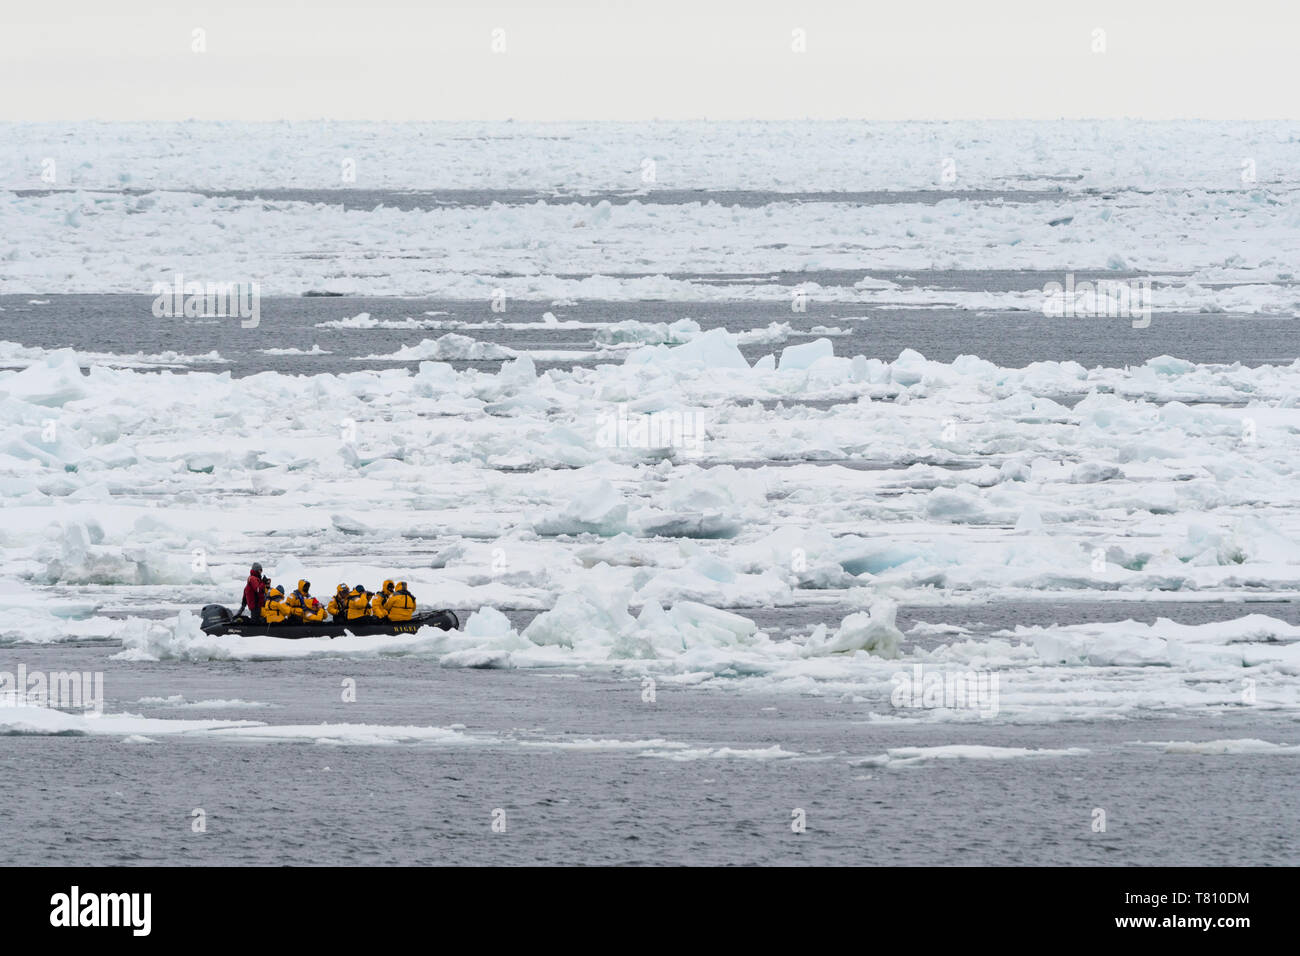 Les touristes sur les bateaux gonflables à la découverte de la calotte glacière, 81 degrés, au nord du Spitzberg, Svalbard, Norvège, Europe, de l'Arctique Banque D'Images